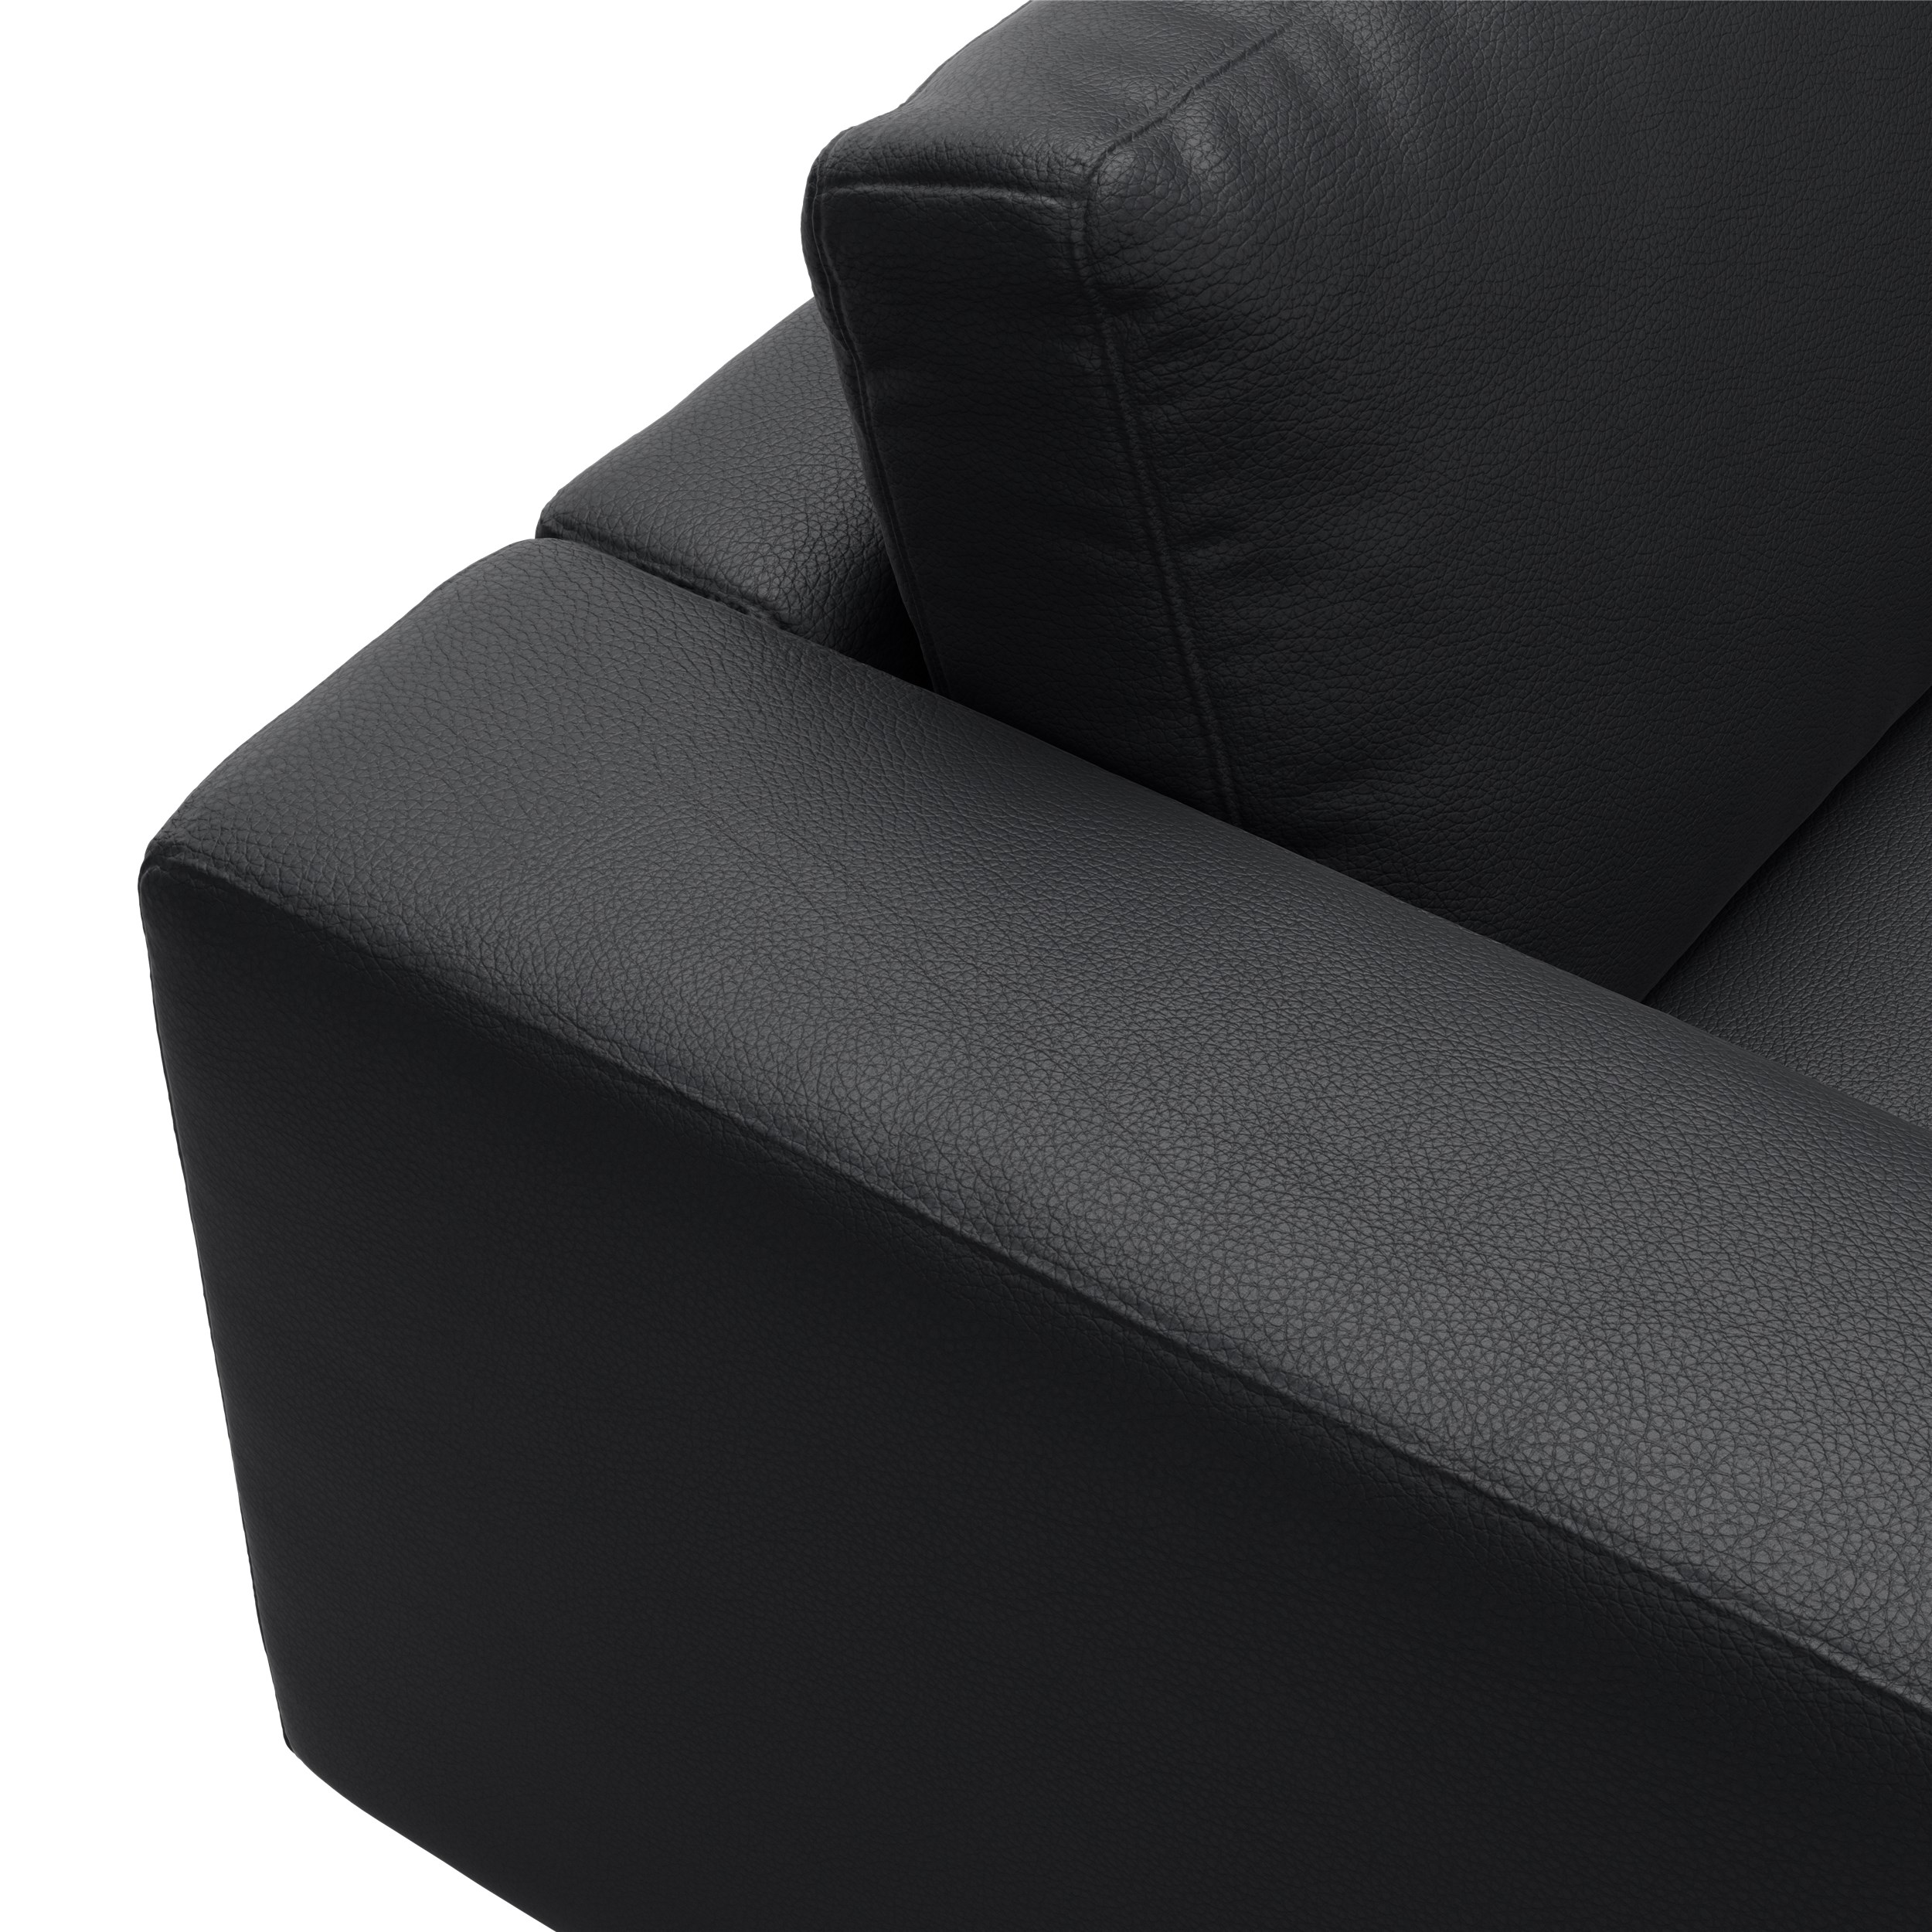 Bennent Sofa med chaiselong - Life-Line Black læder, ben i sort plast og S:PURskum på sinusfjedre m.fiber/silikone mix R:Dun/skum mix